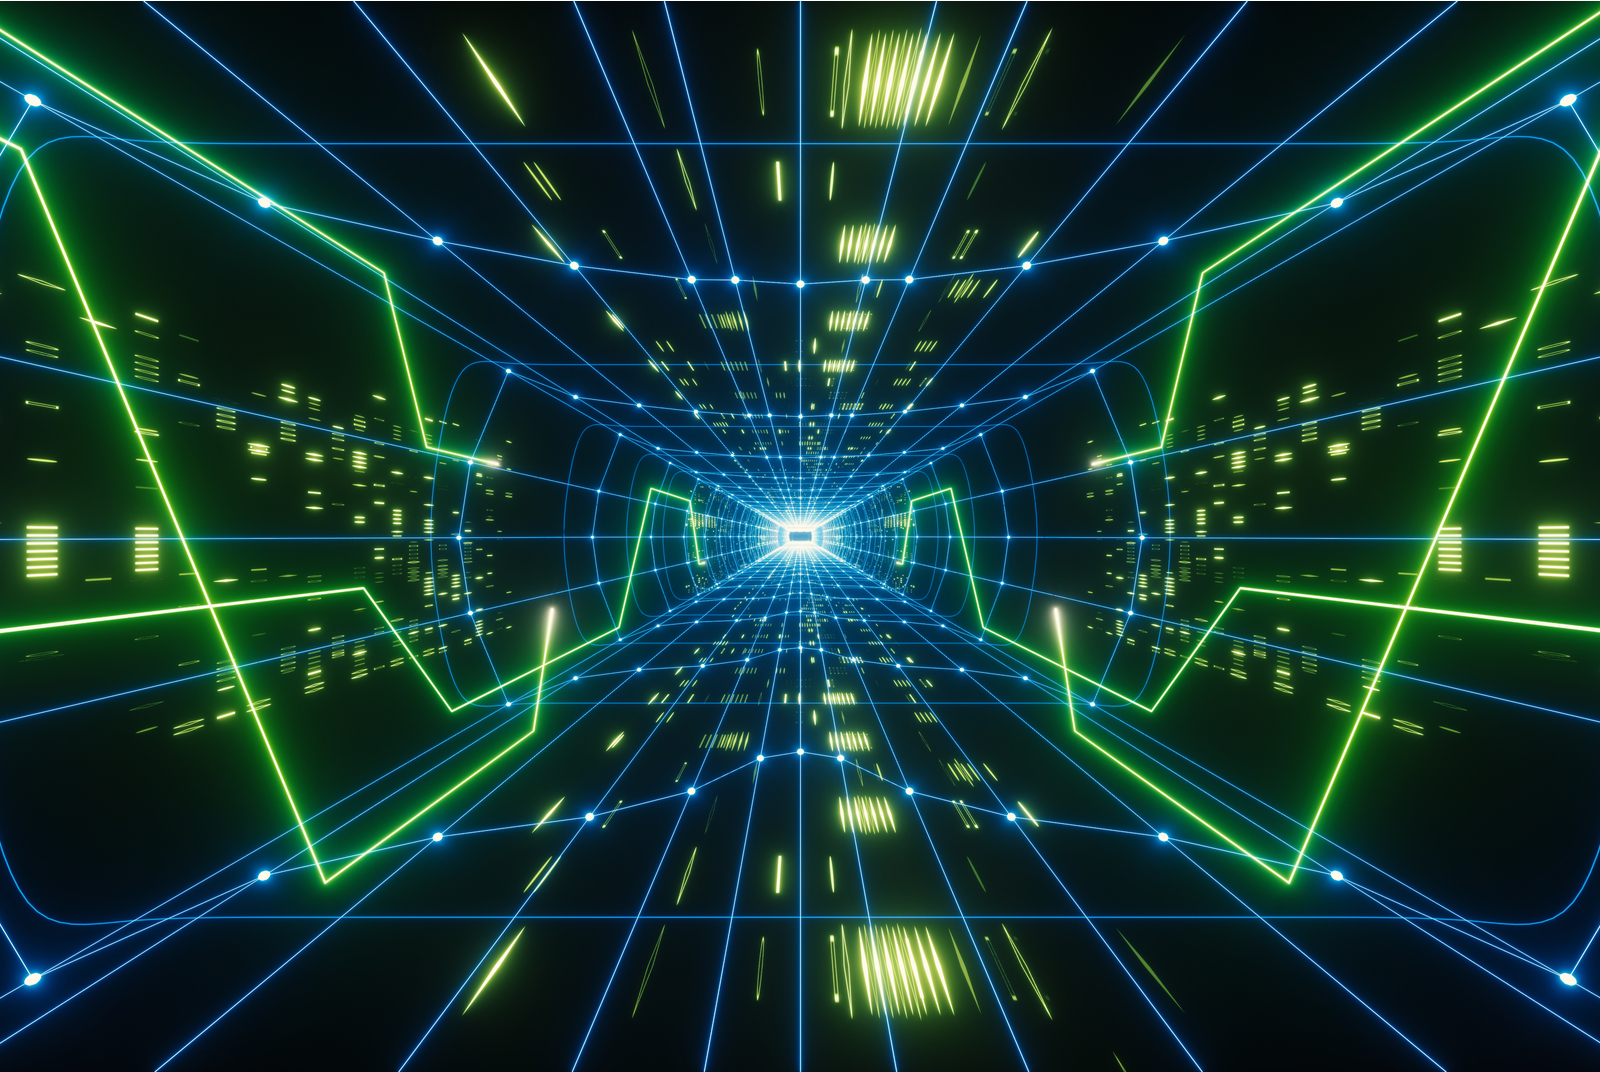 这是一张数字化的科幻风格图片，展示了呈放射状的蓝绿色光线通道，中心有光点，给人以高速穿梭在数据空间的视觉效果。